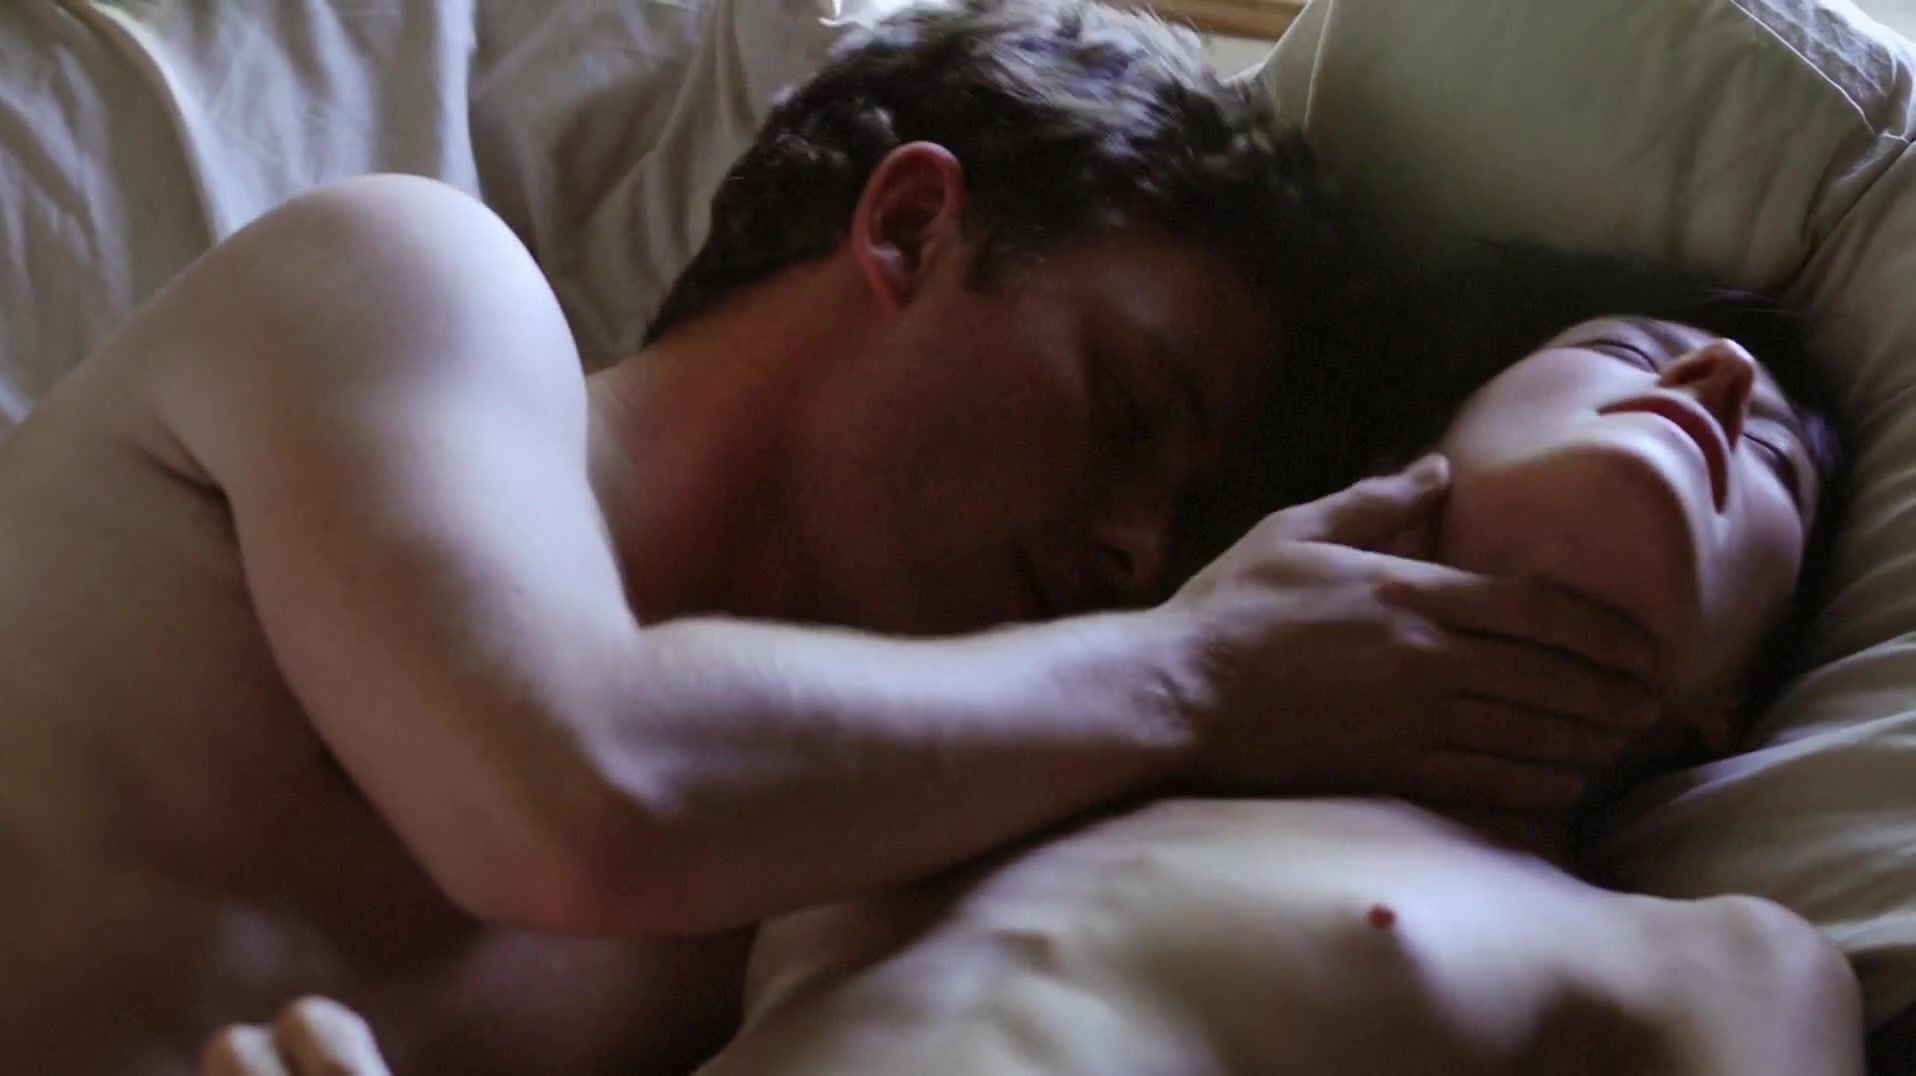 Euro Full Frontal nudity scene of erotic movie "Hide and Seek aka Amorous" Gay Brokenboys - 2